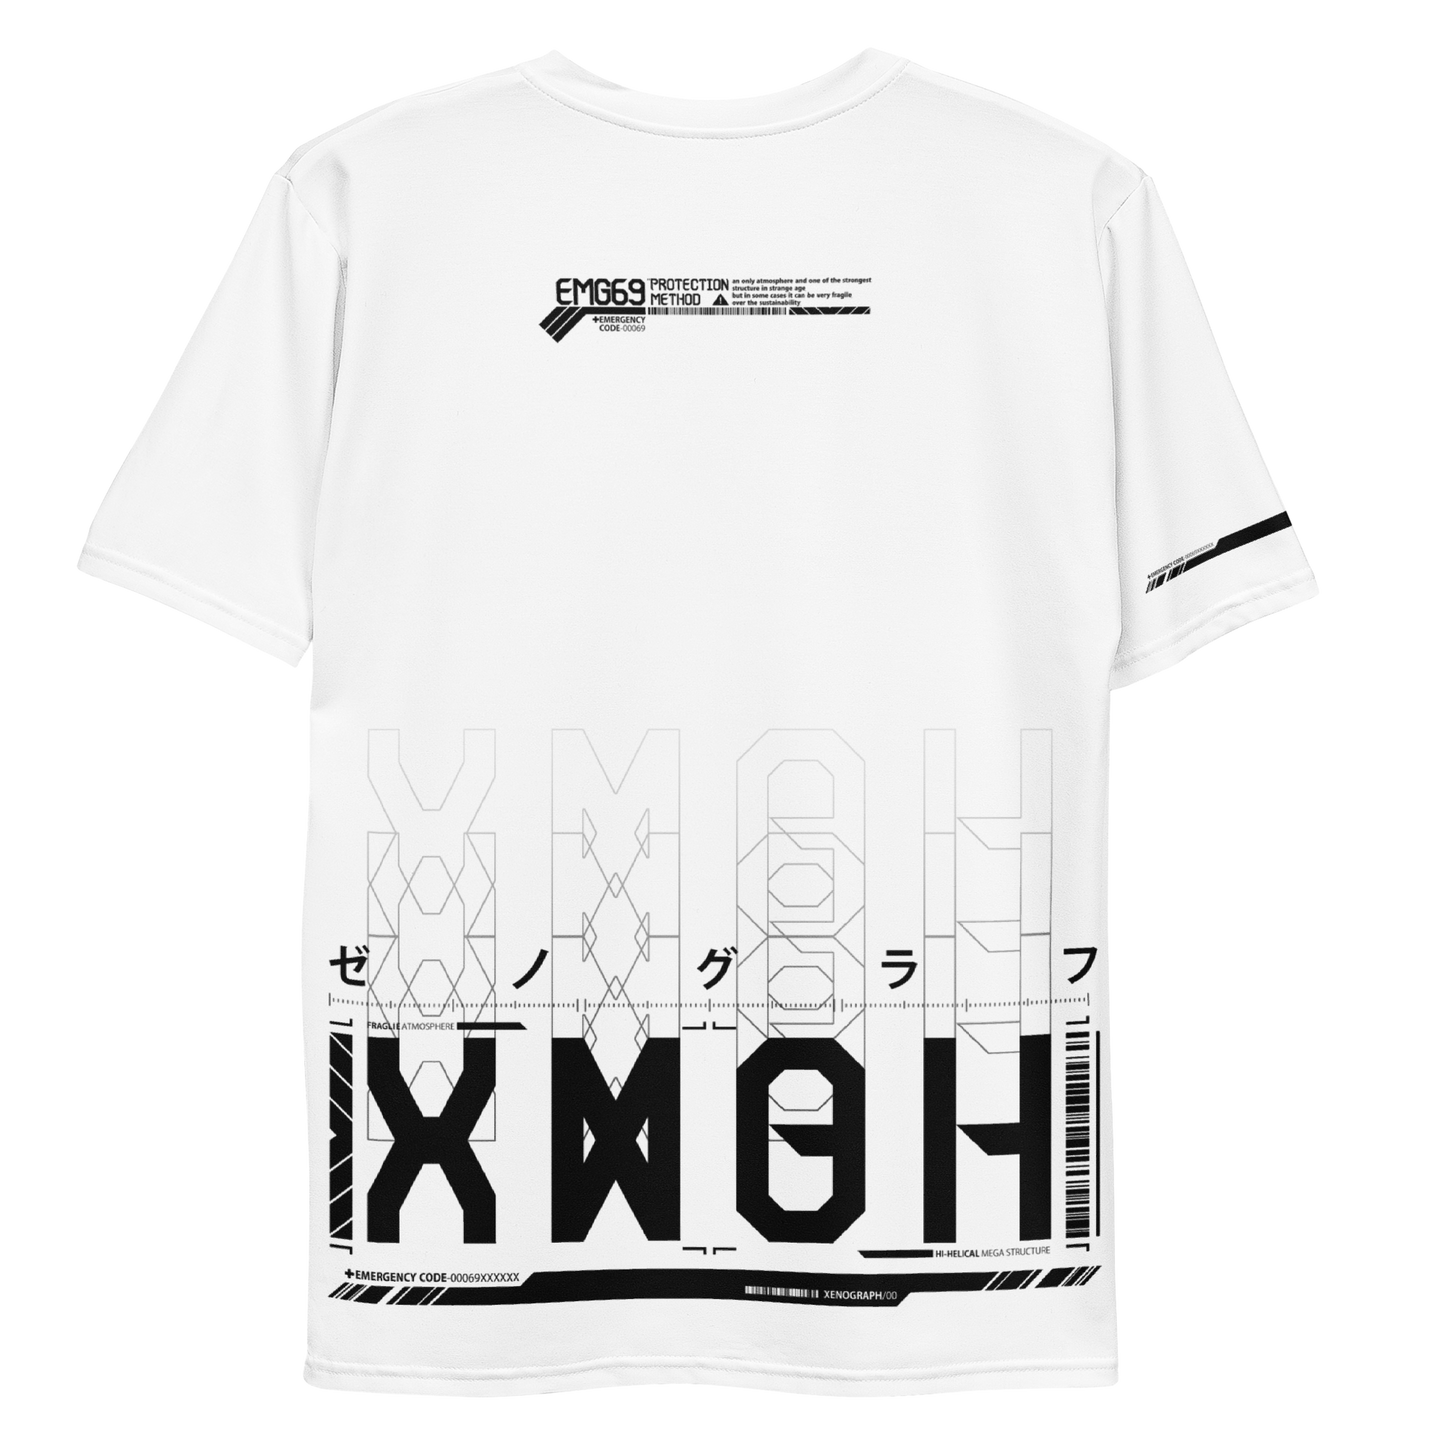 XENOGRAPH ver.2.0 [ full print T-shirt ] white